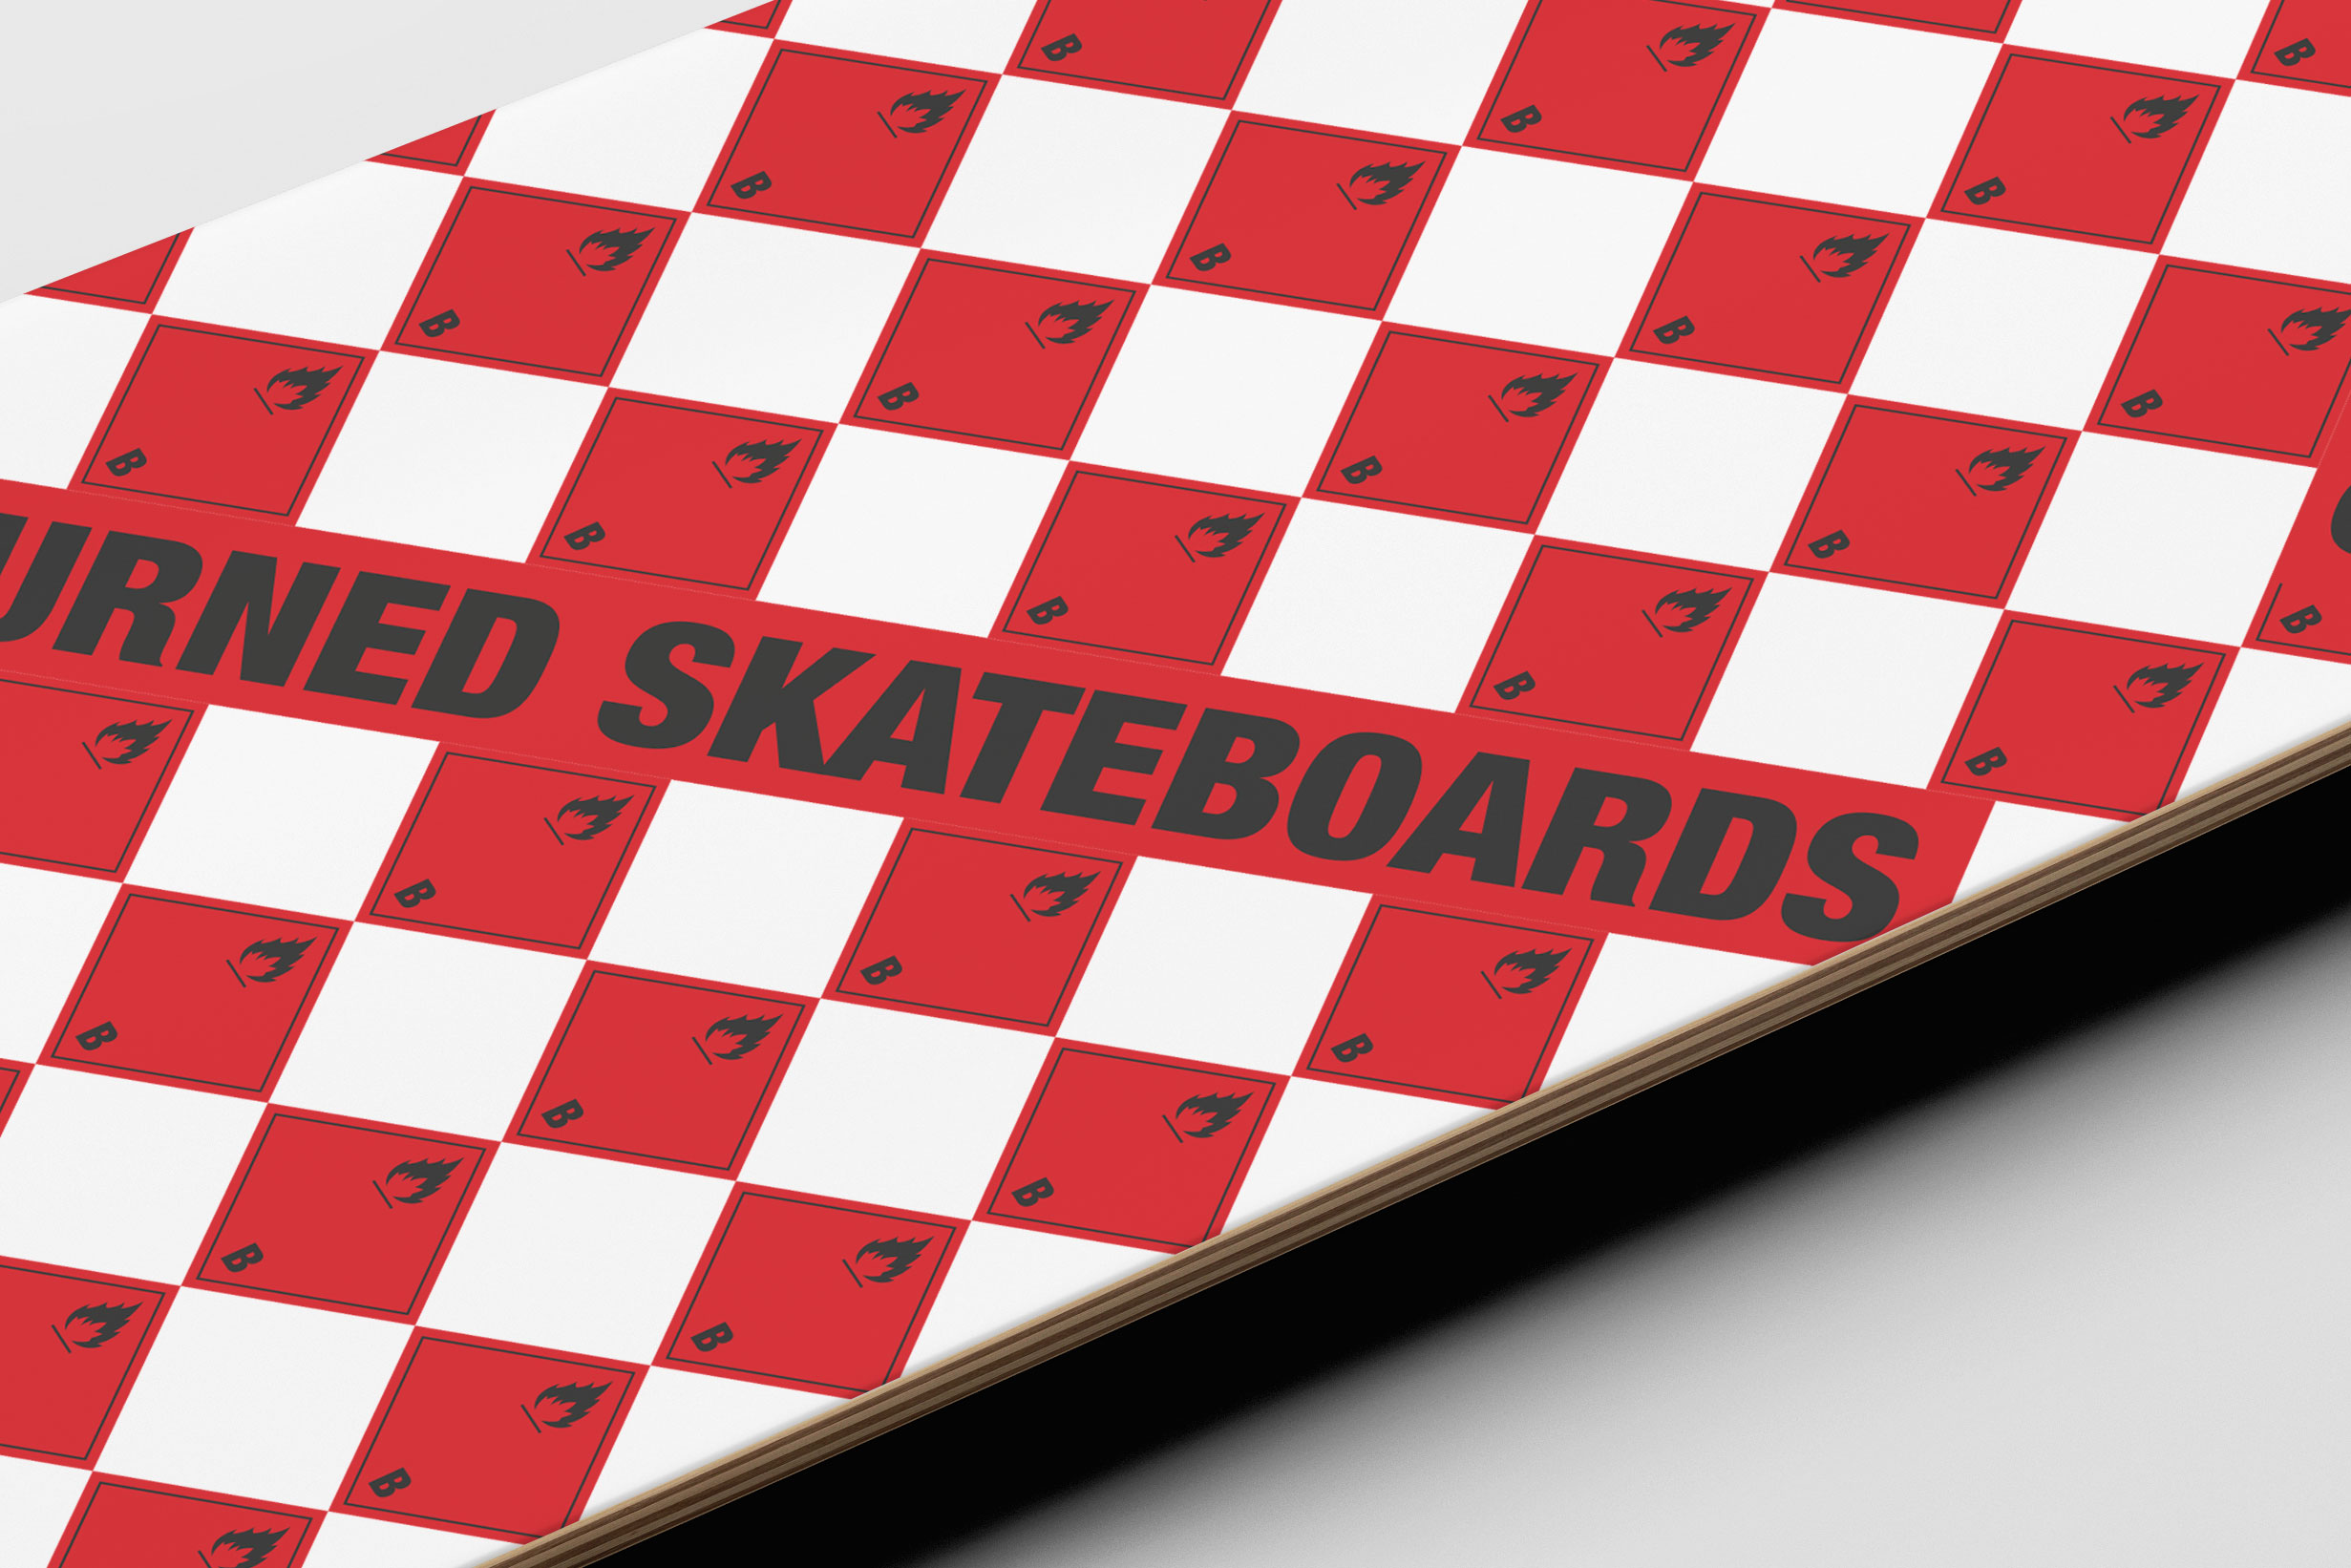 4_decks_design_graphic_burnded_skate